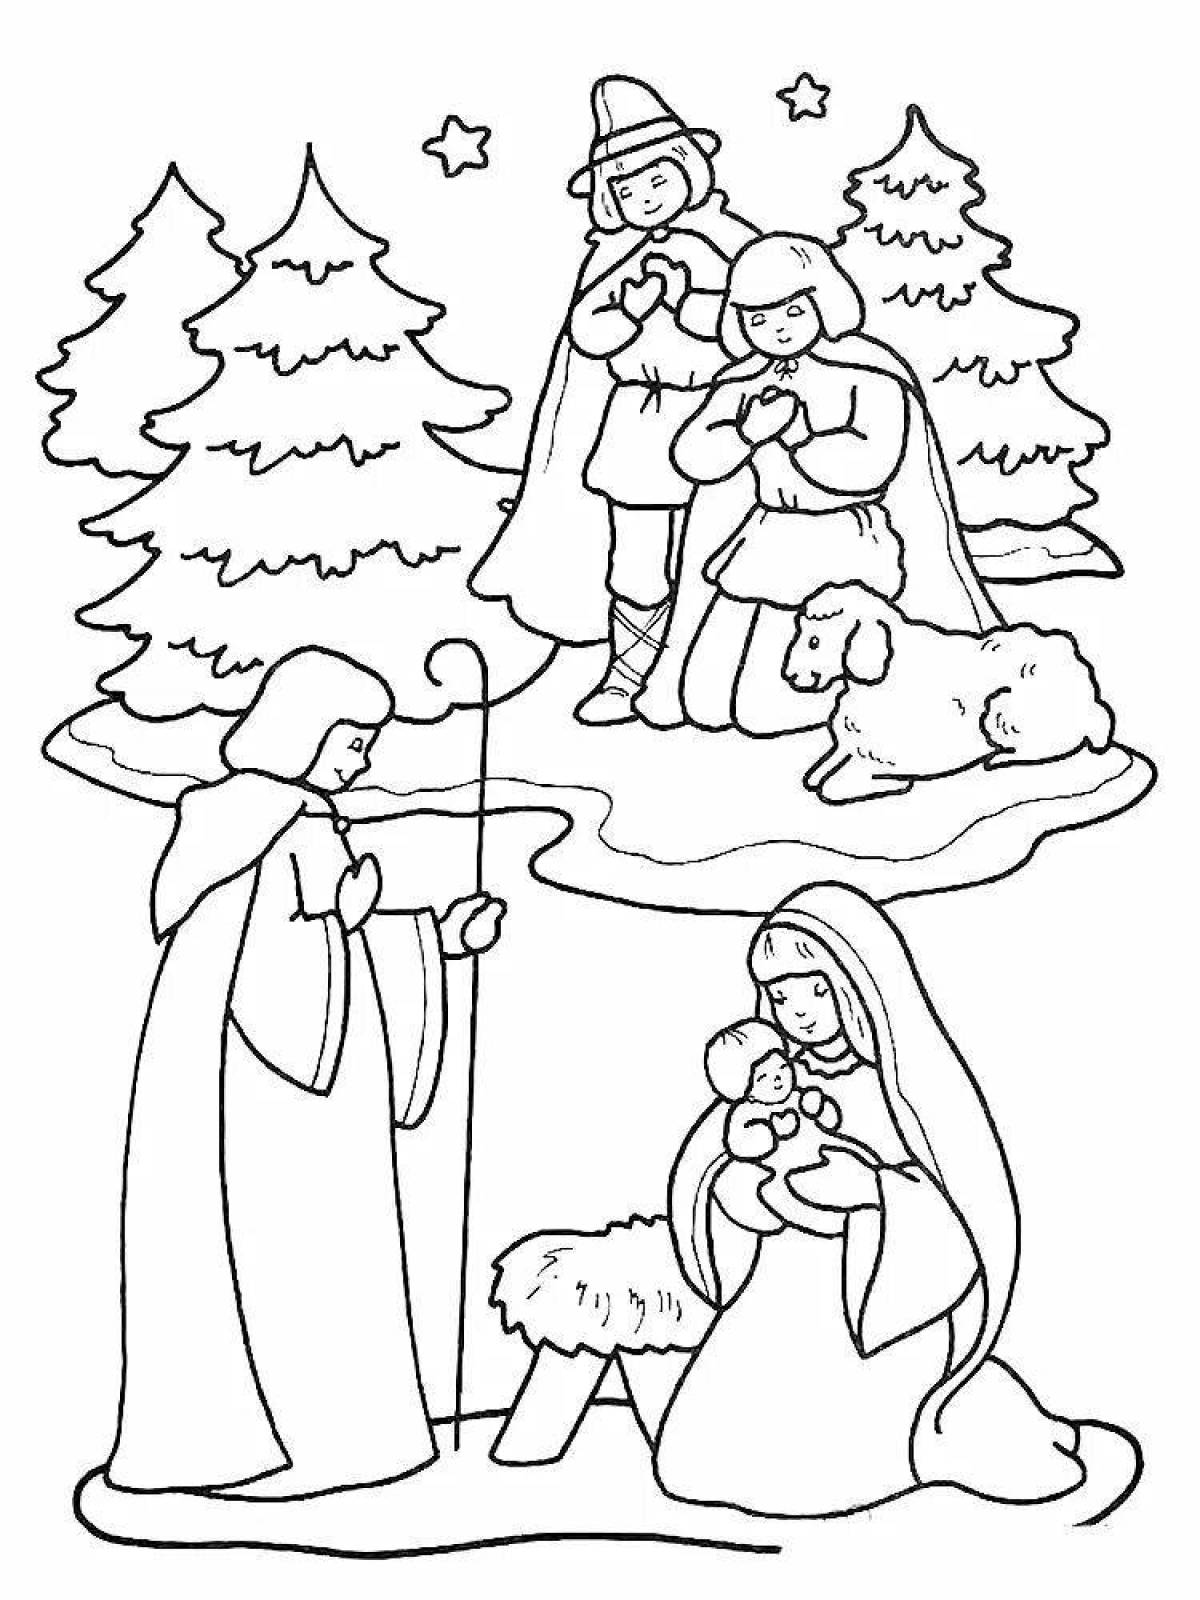 Large Christmas drawing